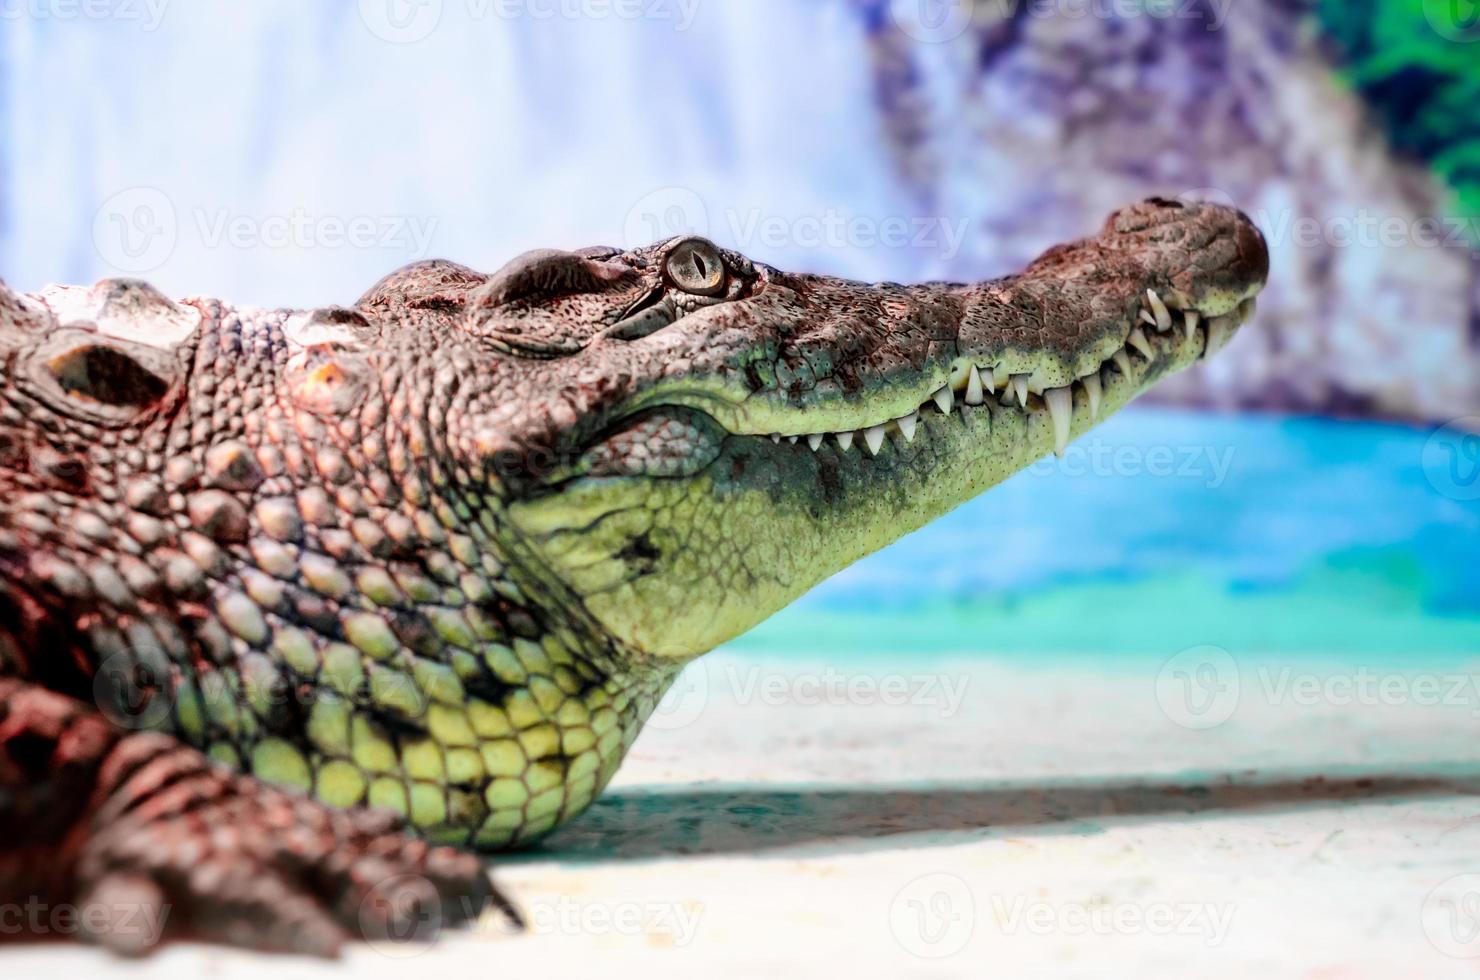 Gran cabeza de cocodrilo con boca dentuda y ojos verdes de cerca foto